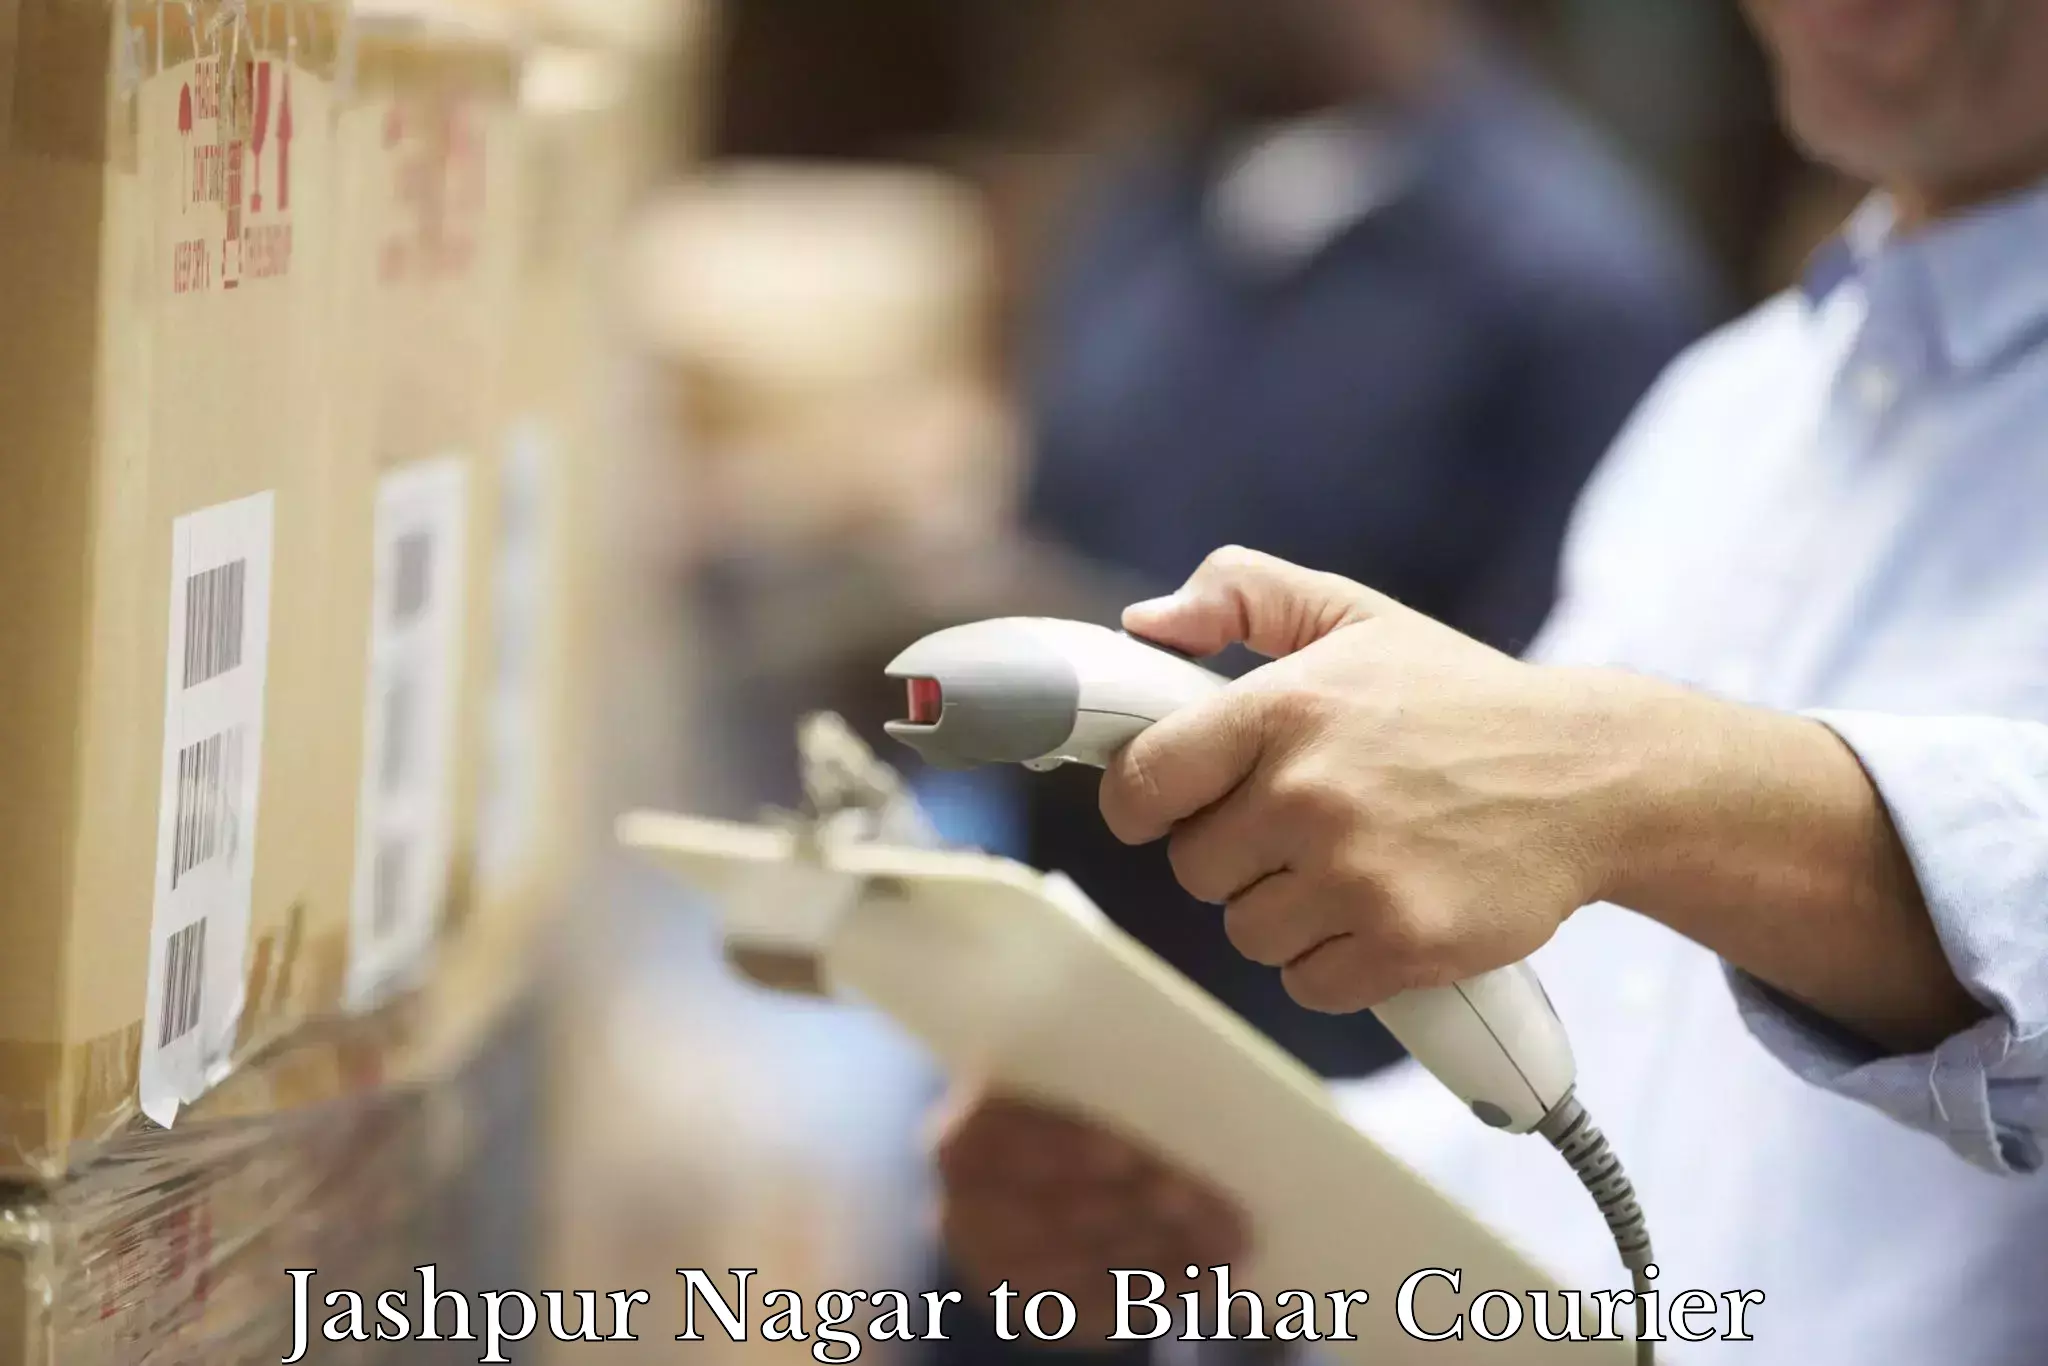 Courier service partnerships Jashpur Nagar to Bakhtiarpur